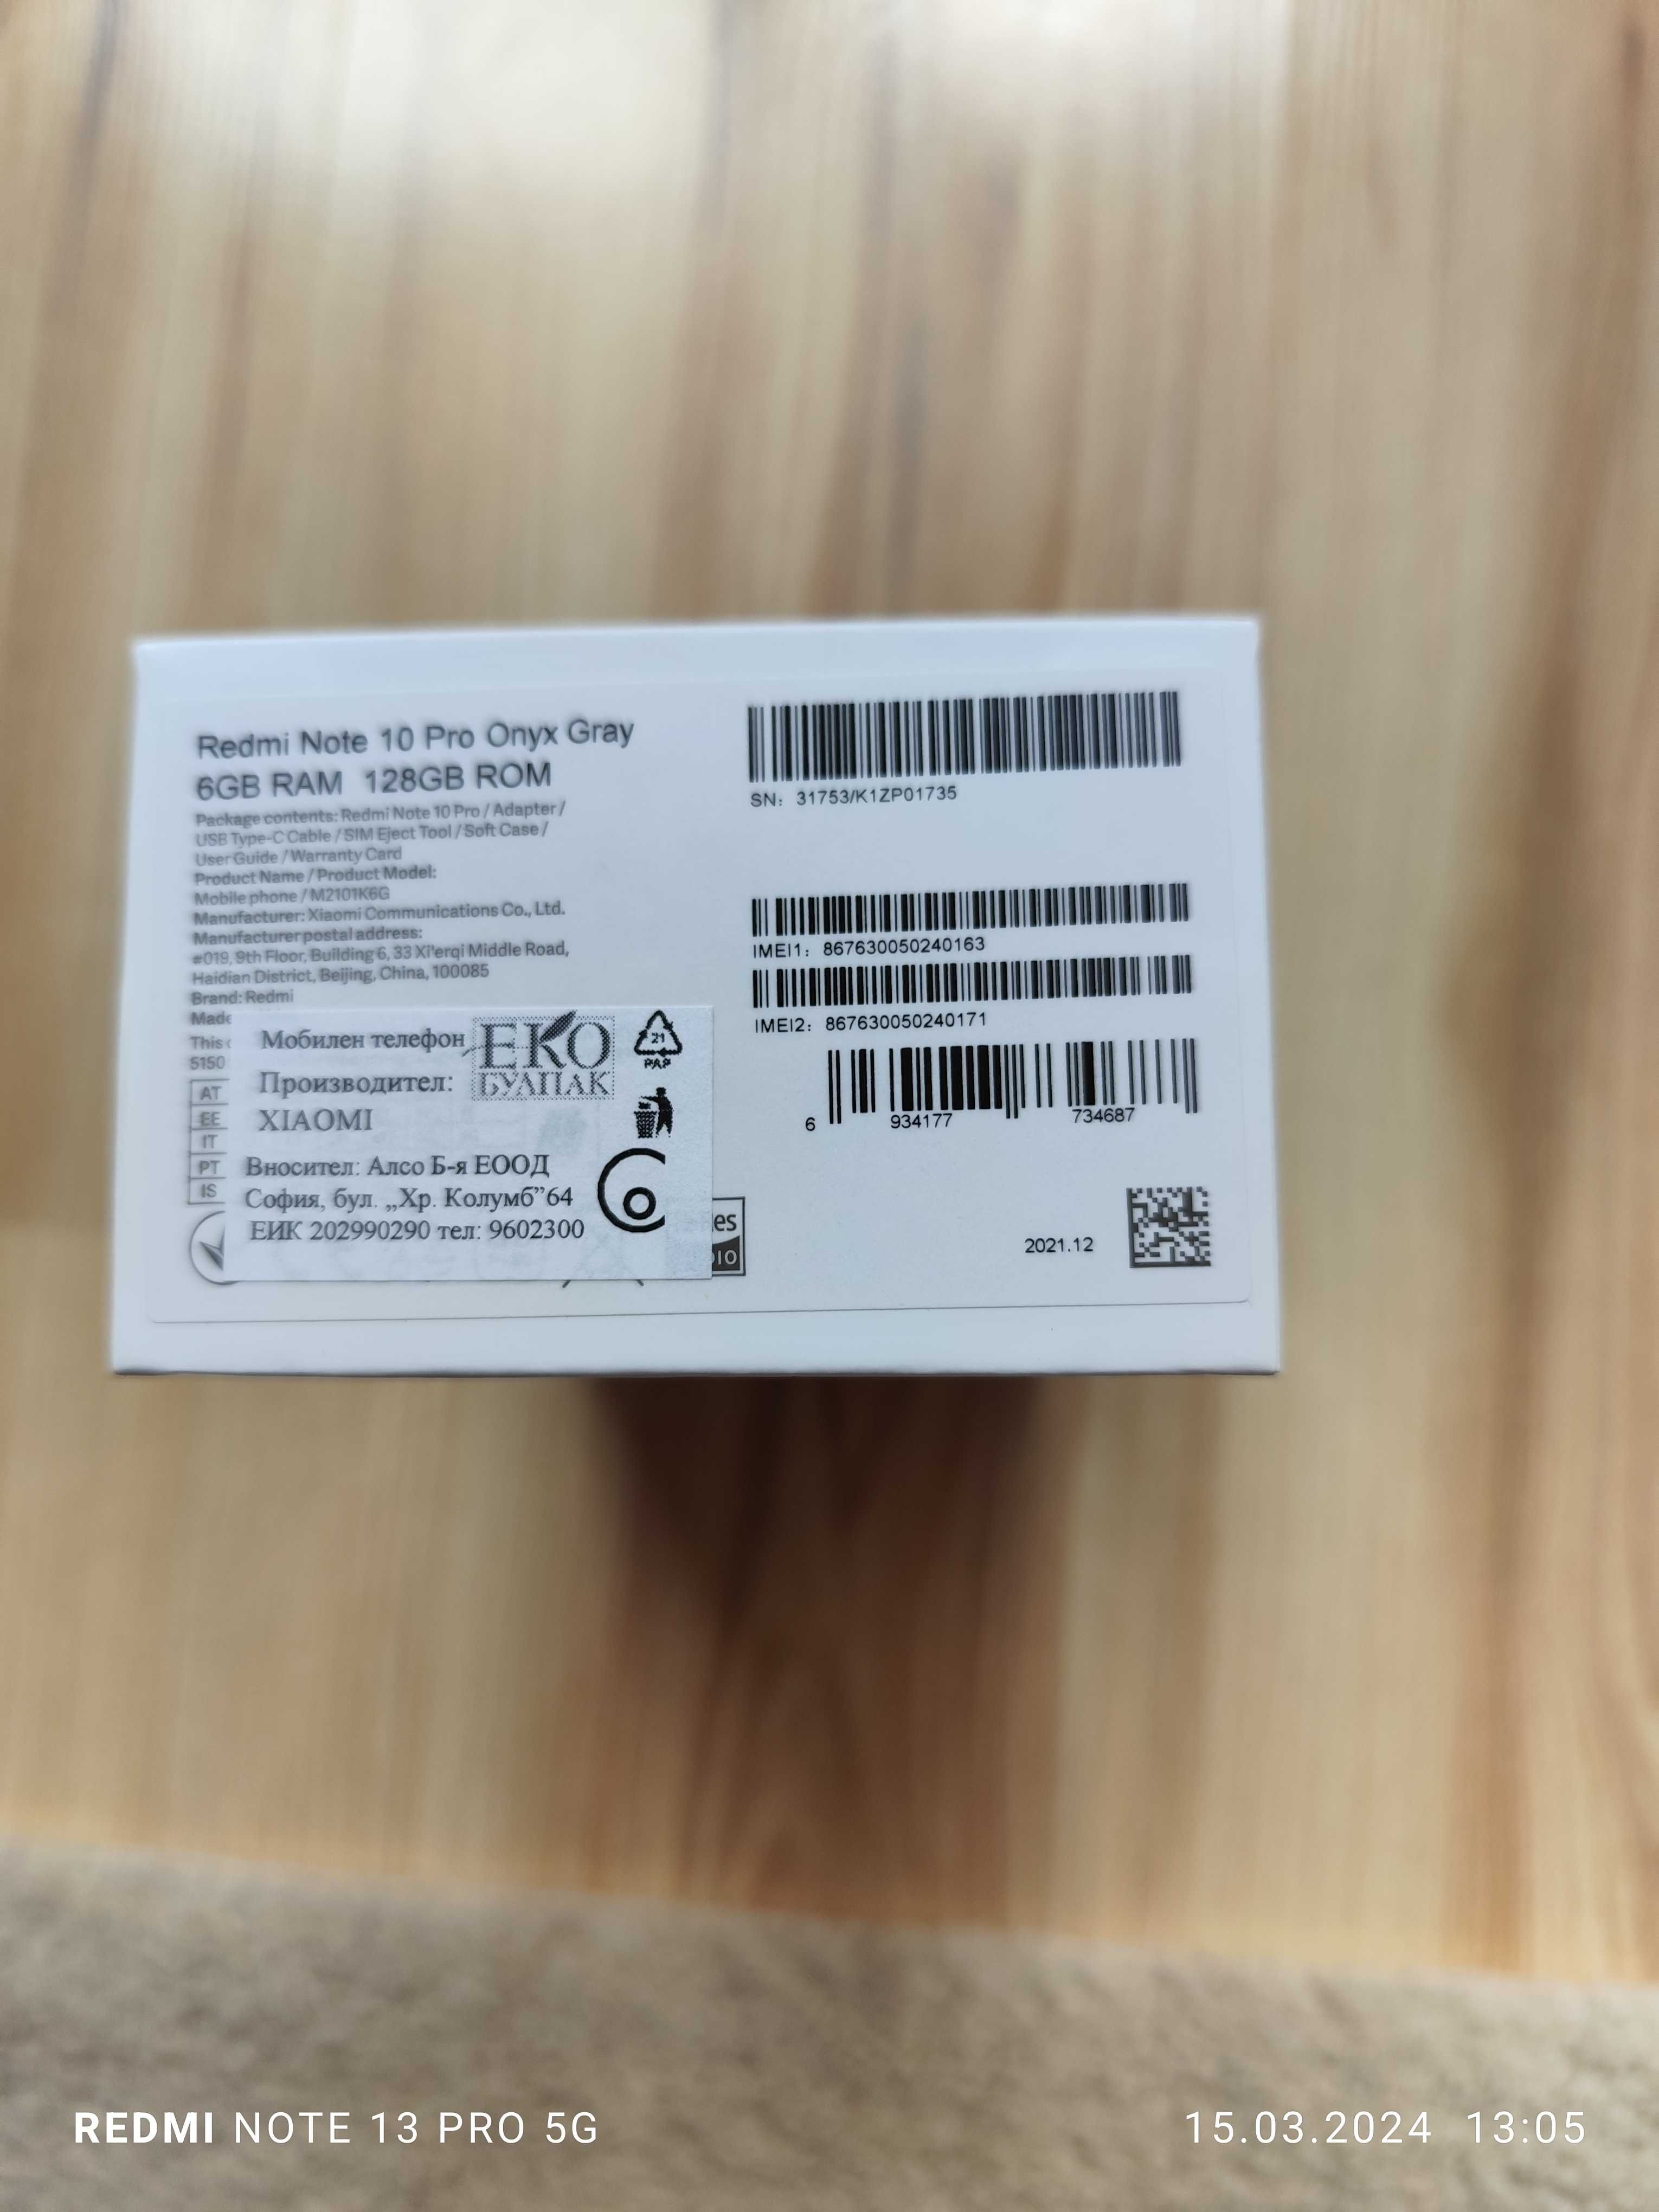 Redmi Note 10 PRO Onix Gray 6GB RAM, 128GB ROM